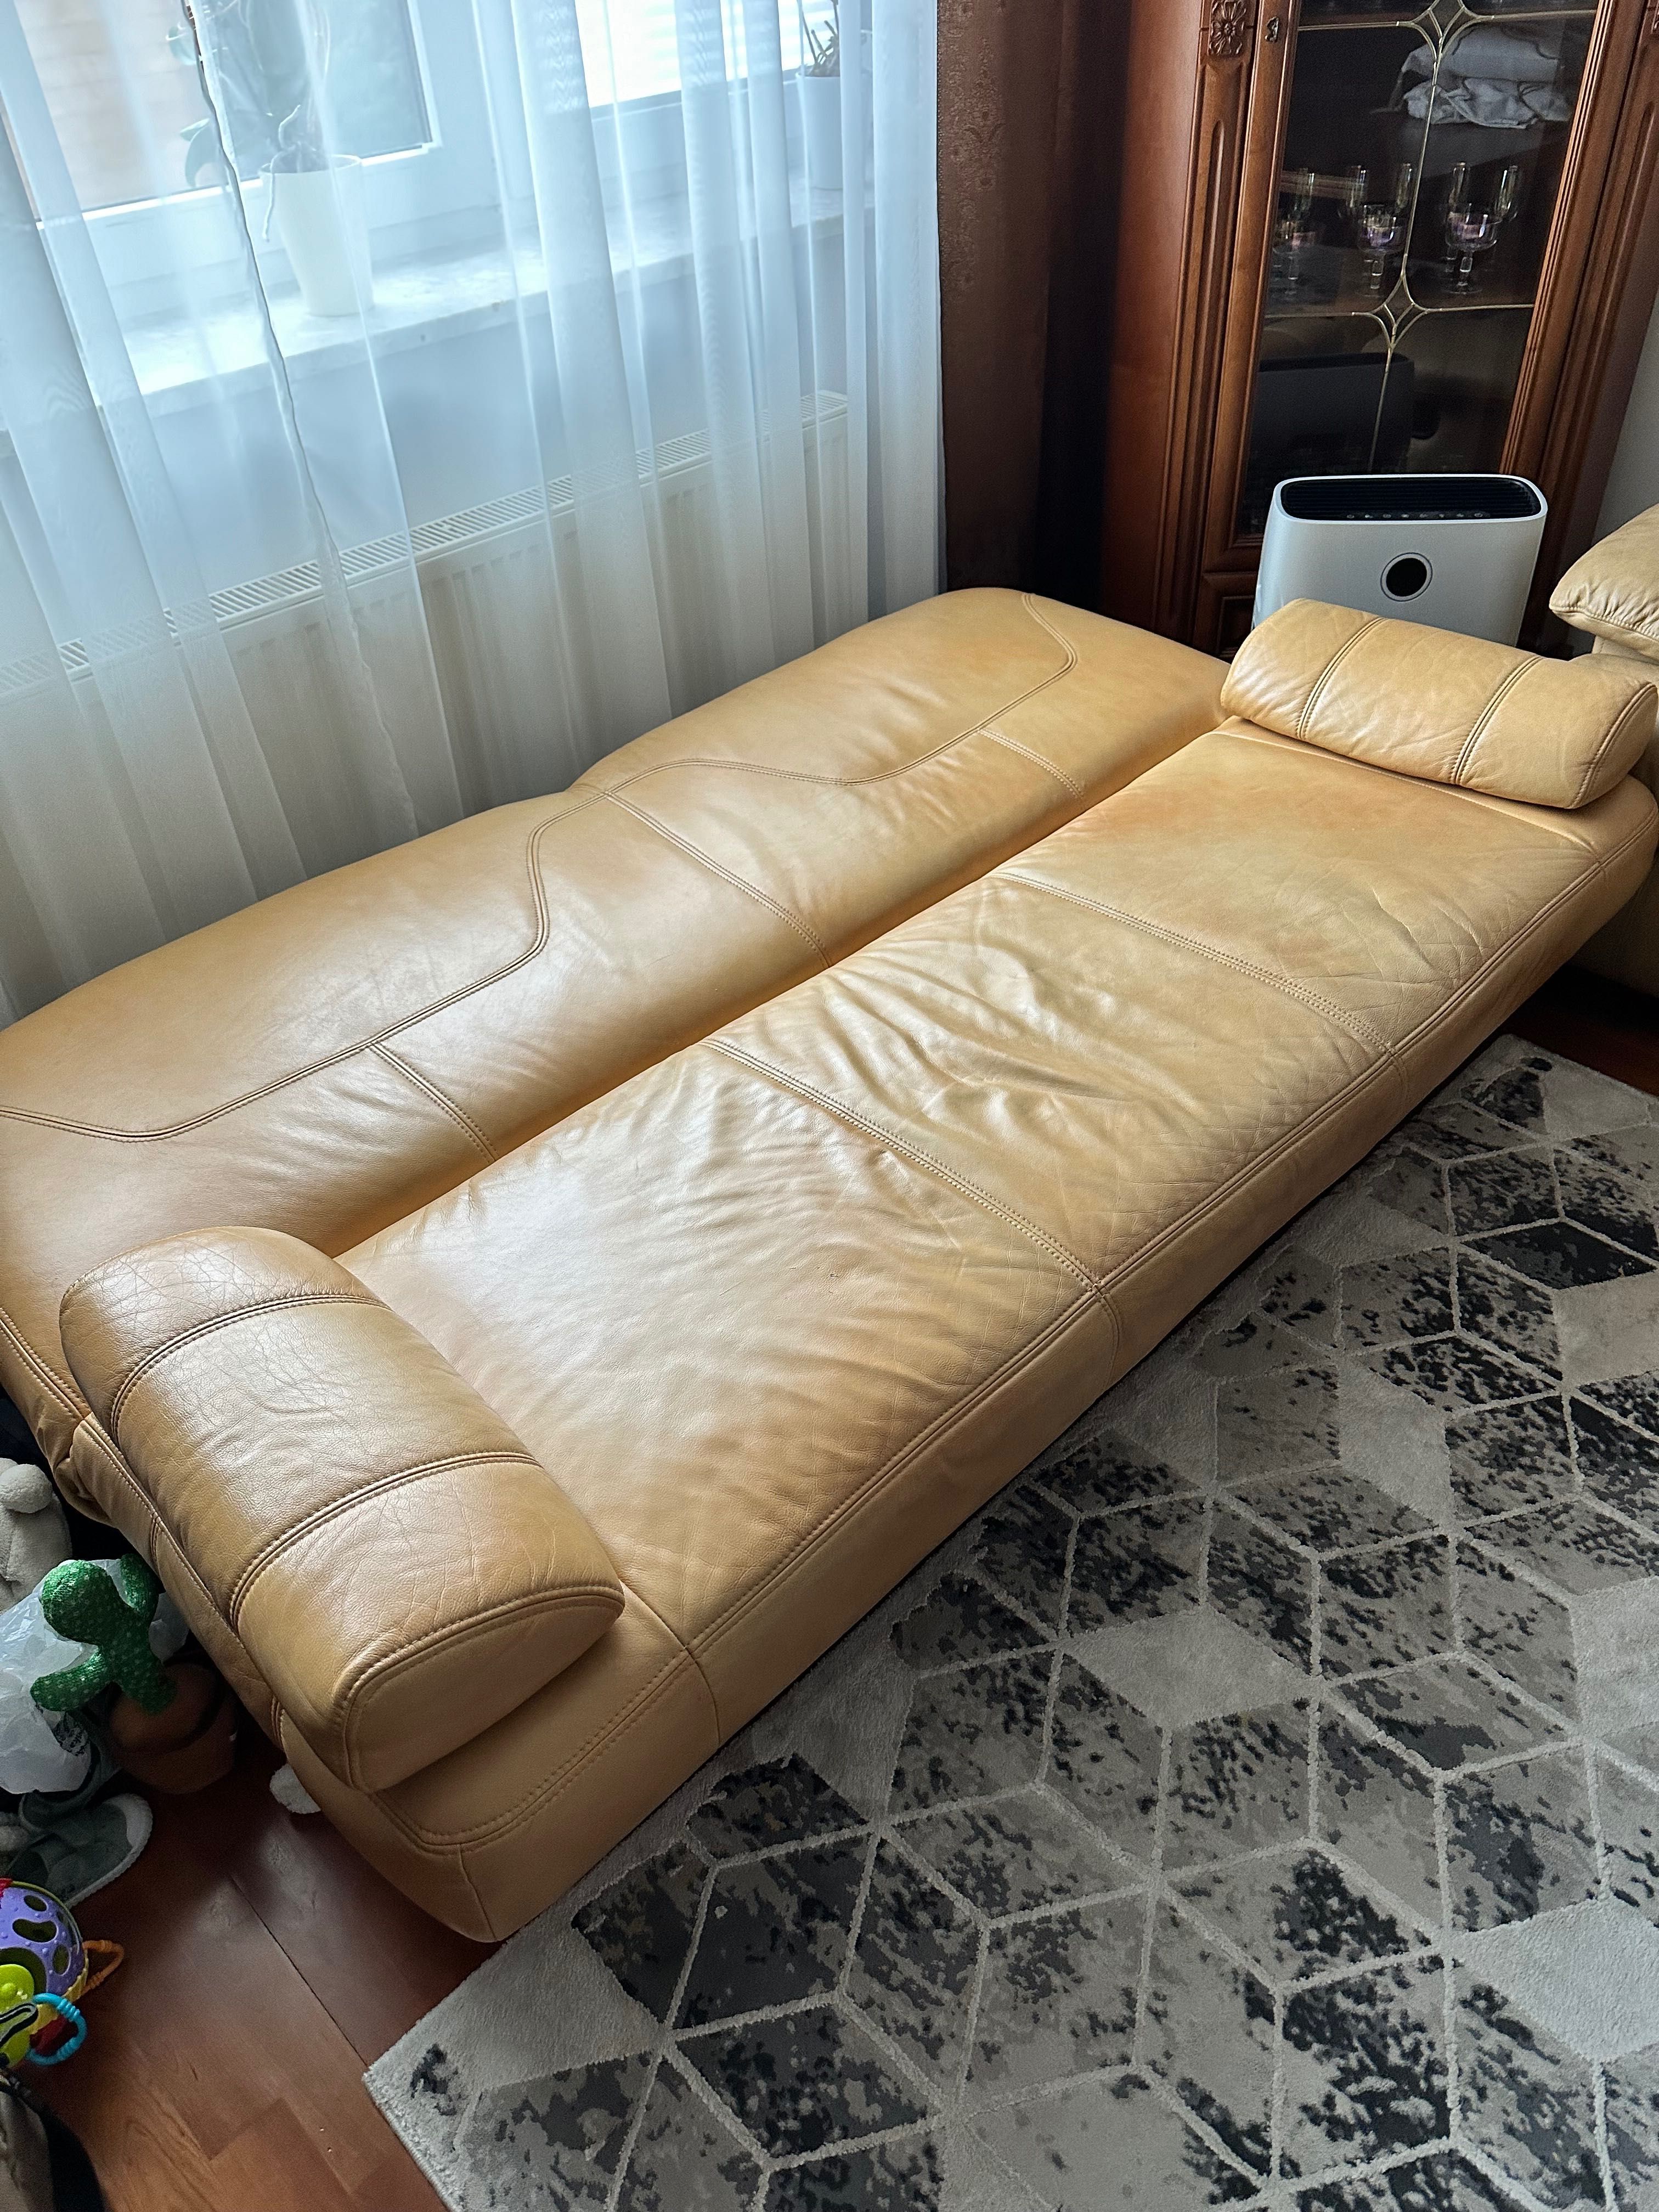 Sofa wersalka kanapa + 2 fotele zestaw komplet OKAZJA tani wypoczynek